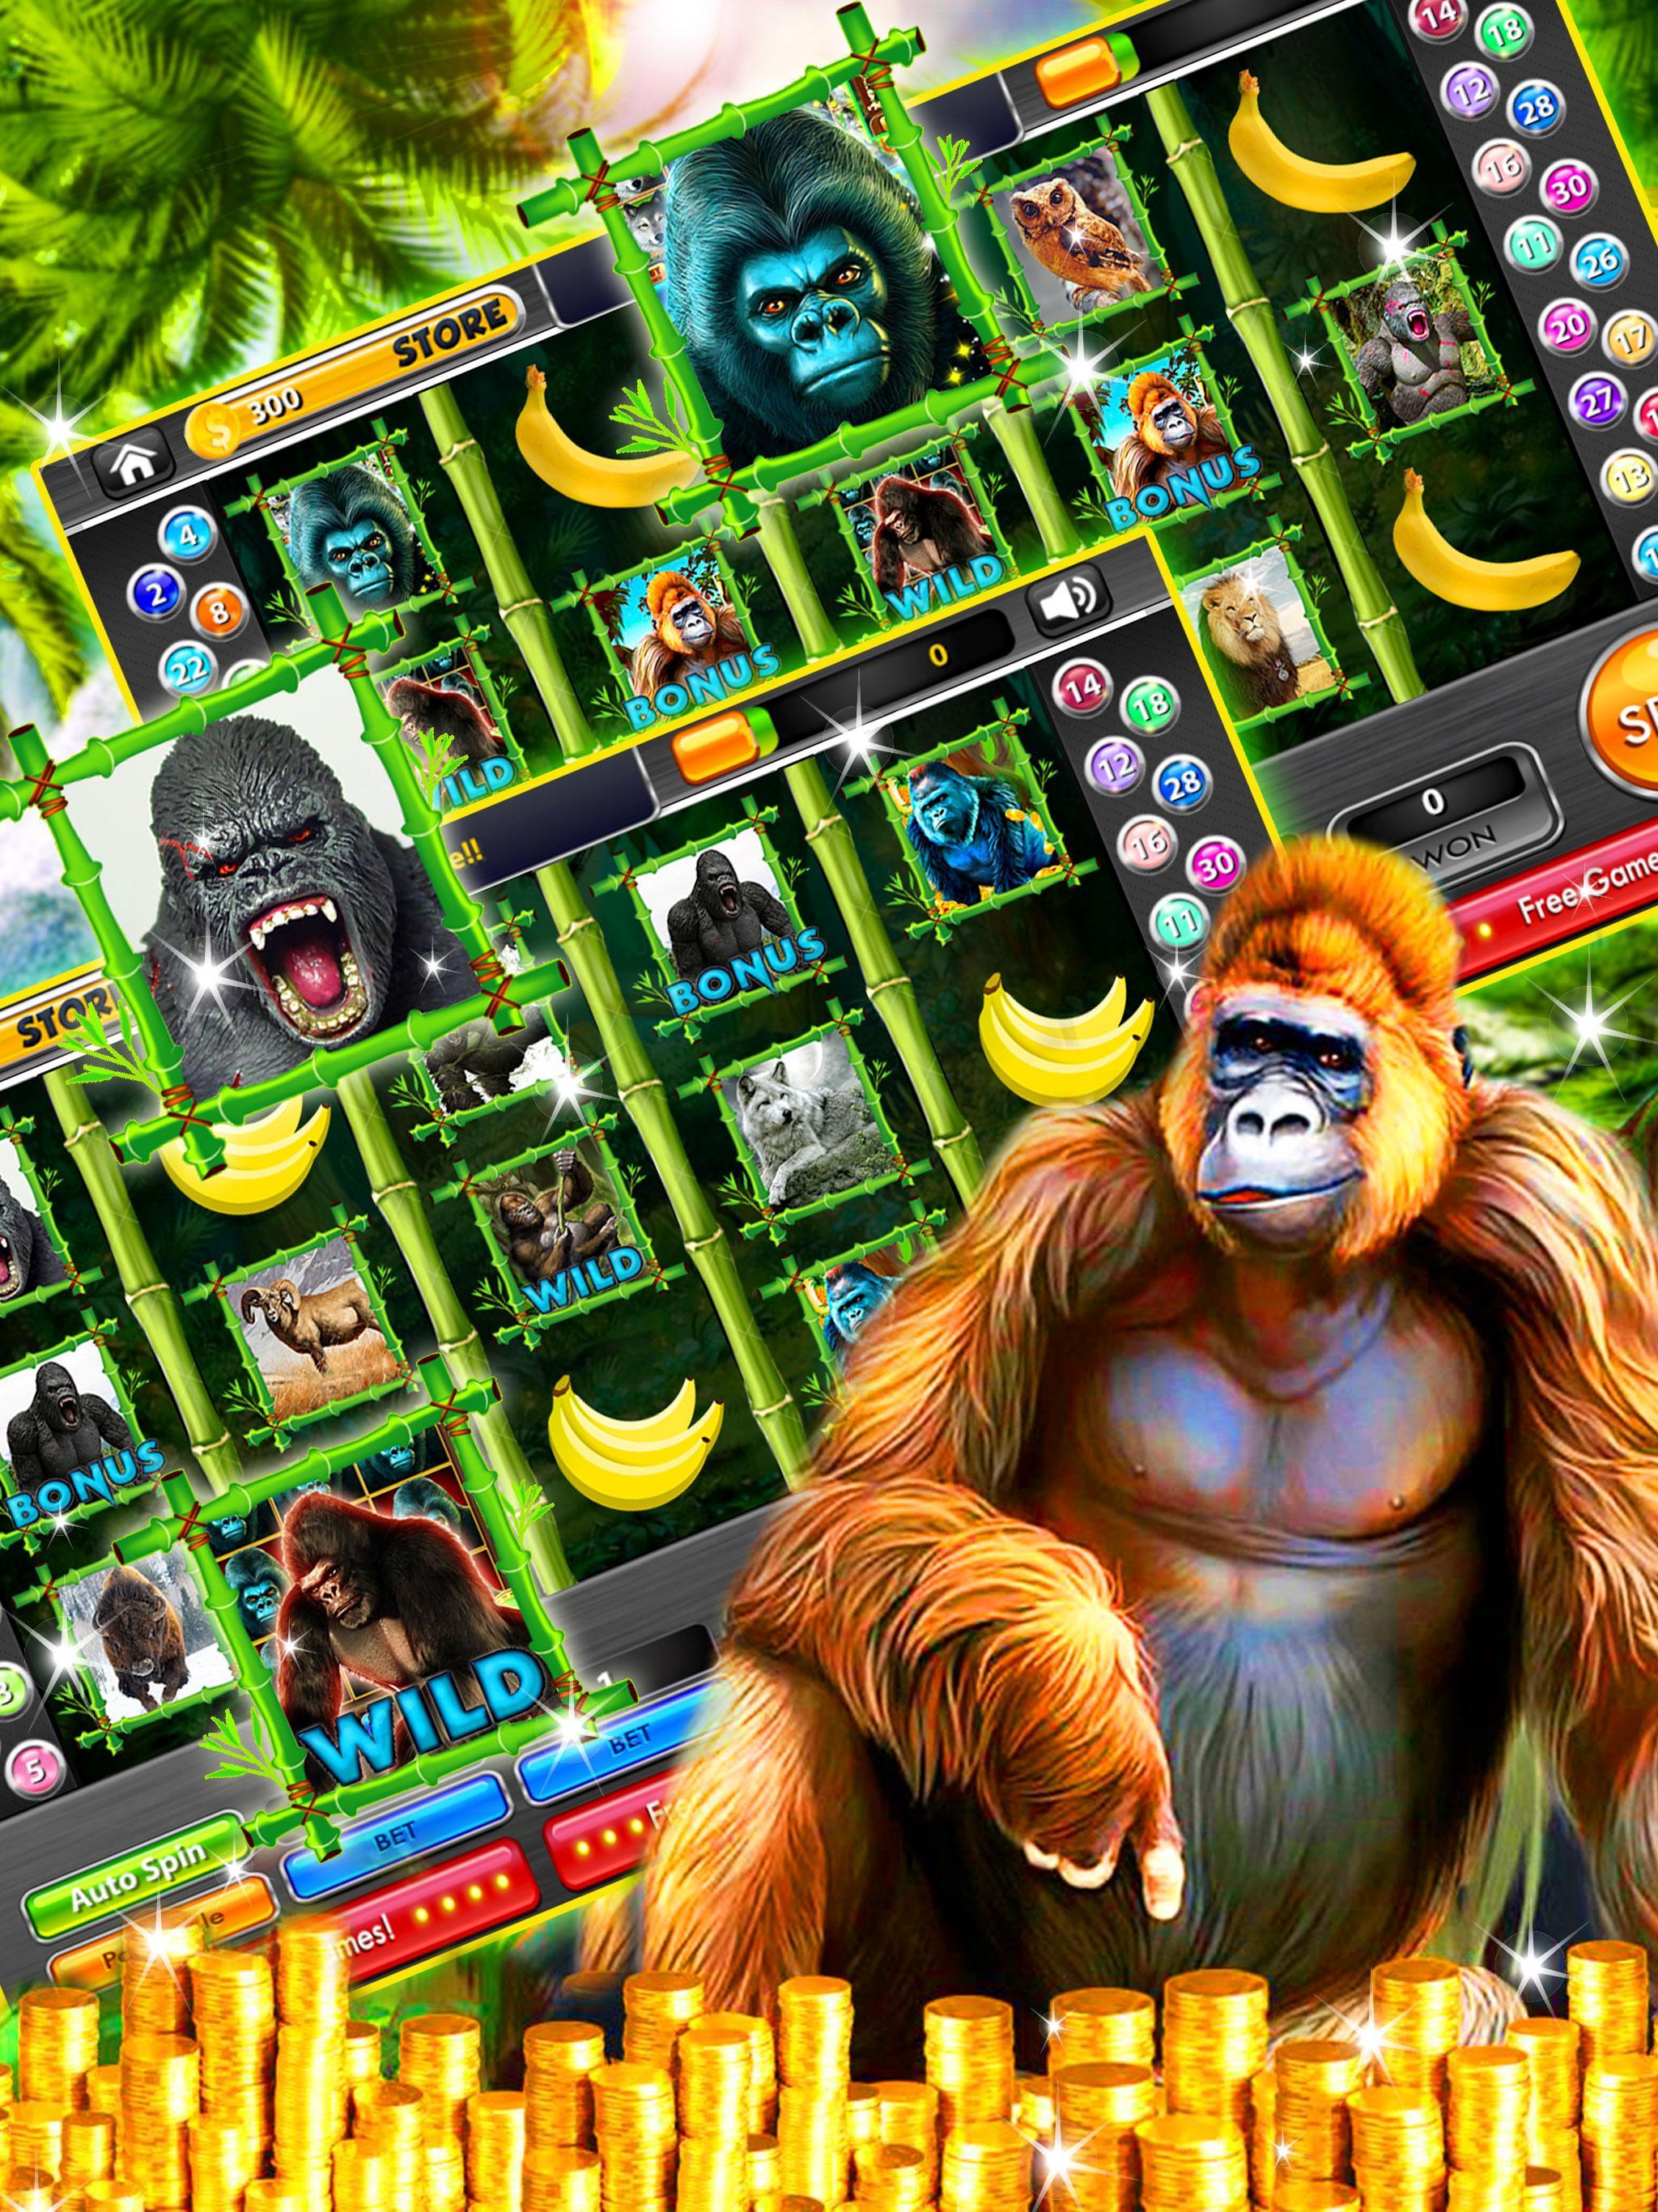 Garilla casino bonus garilla vad1. Игровой автомат горилла. Горилла в джунглях. Слот с гориллой. Игровой автомат Monkey Jungle.